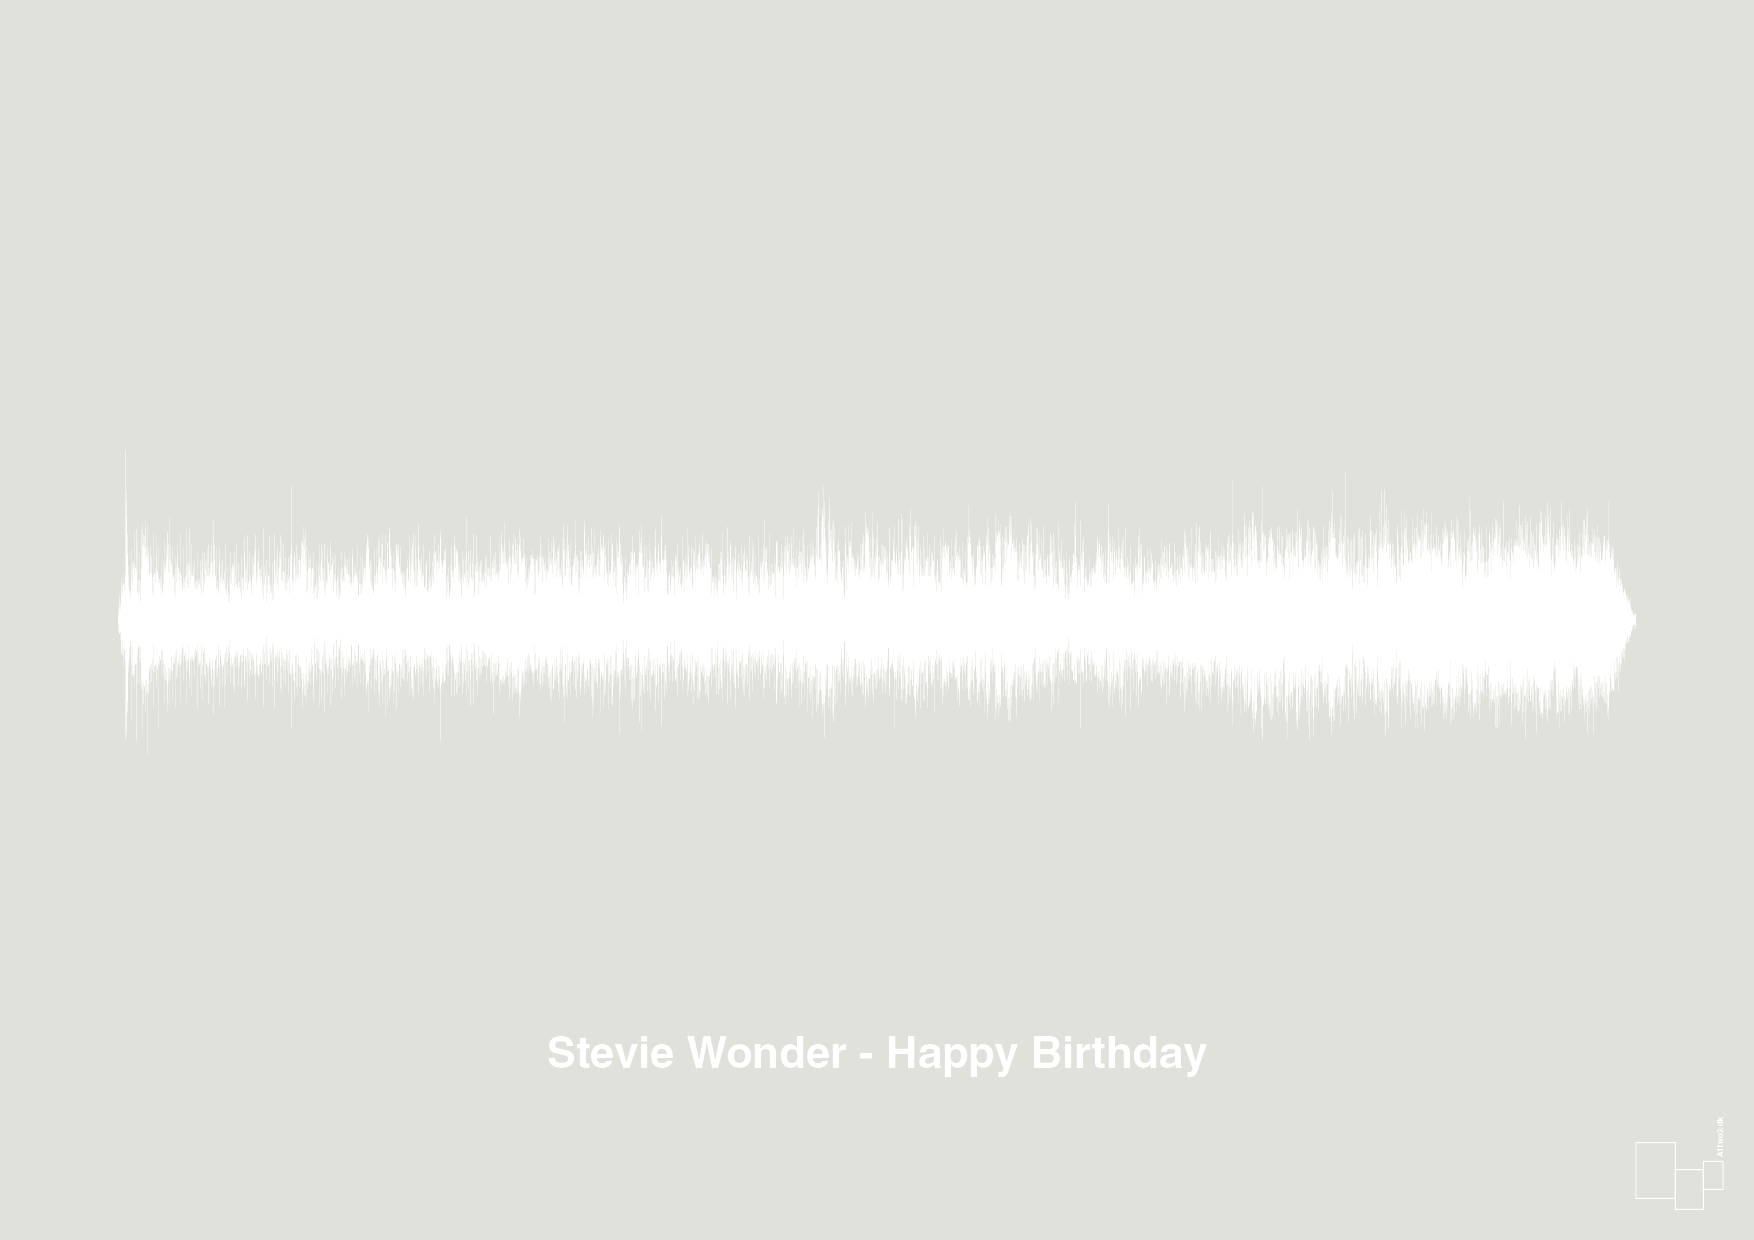 stevie wonder - happy birthday - Plakat med Musik i Painters White